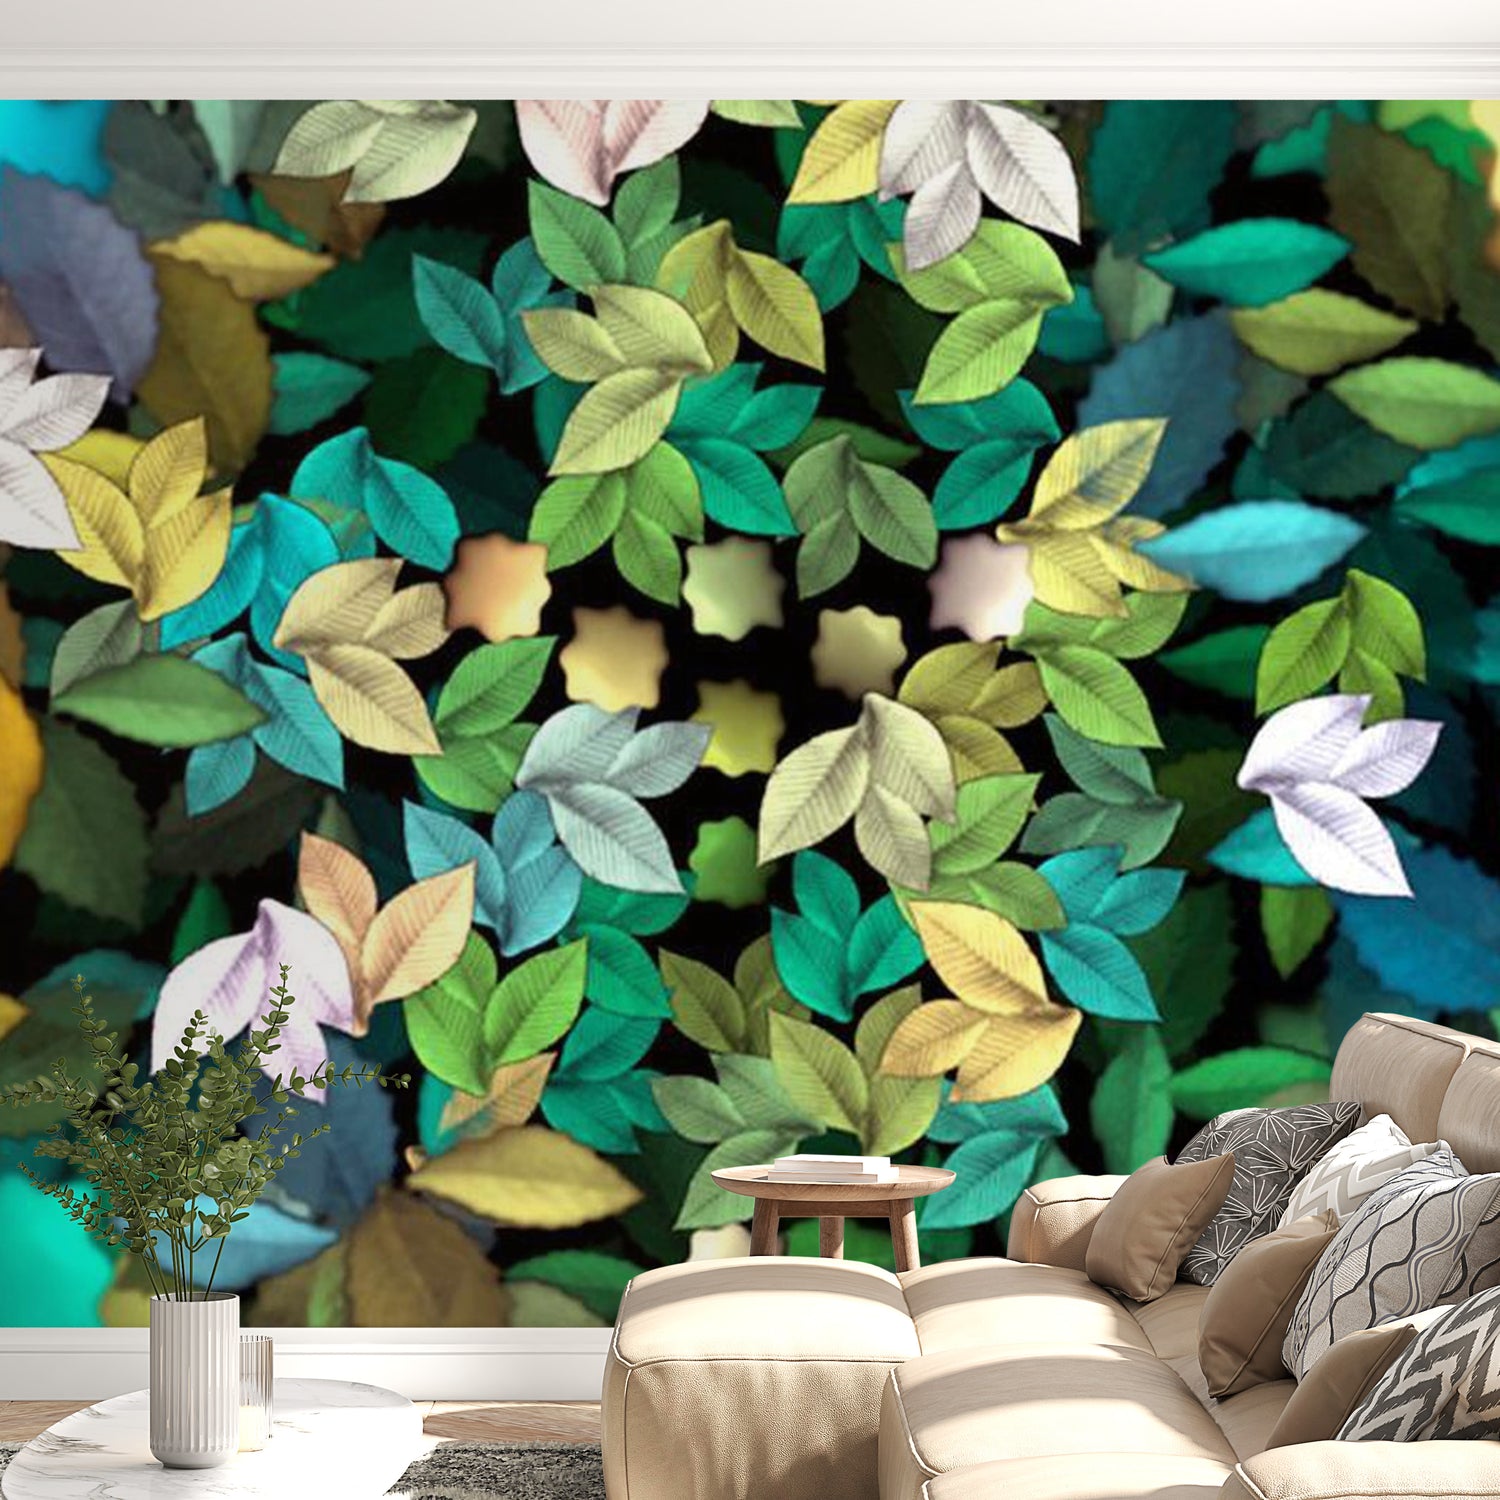 Botanical Wallpaper Wall Mural - Magic Of Nature